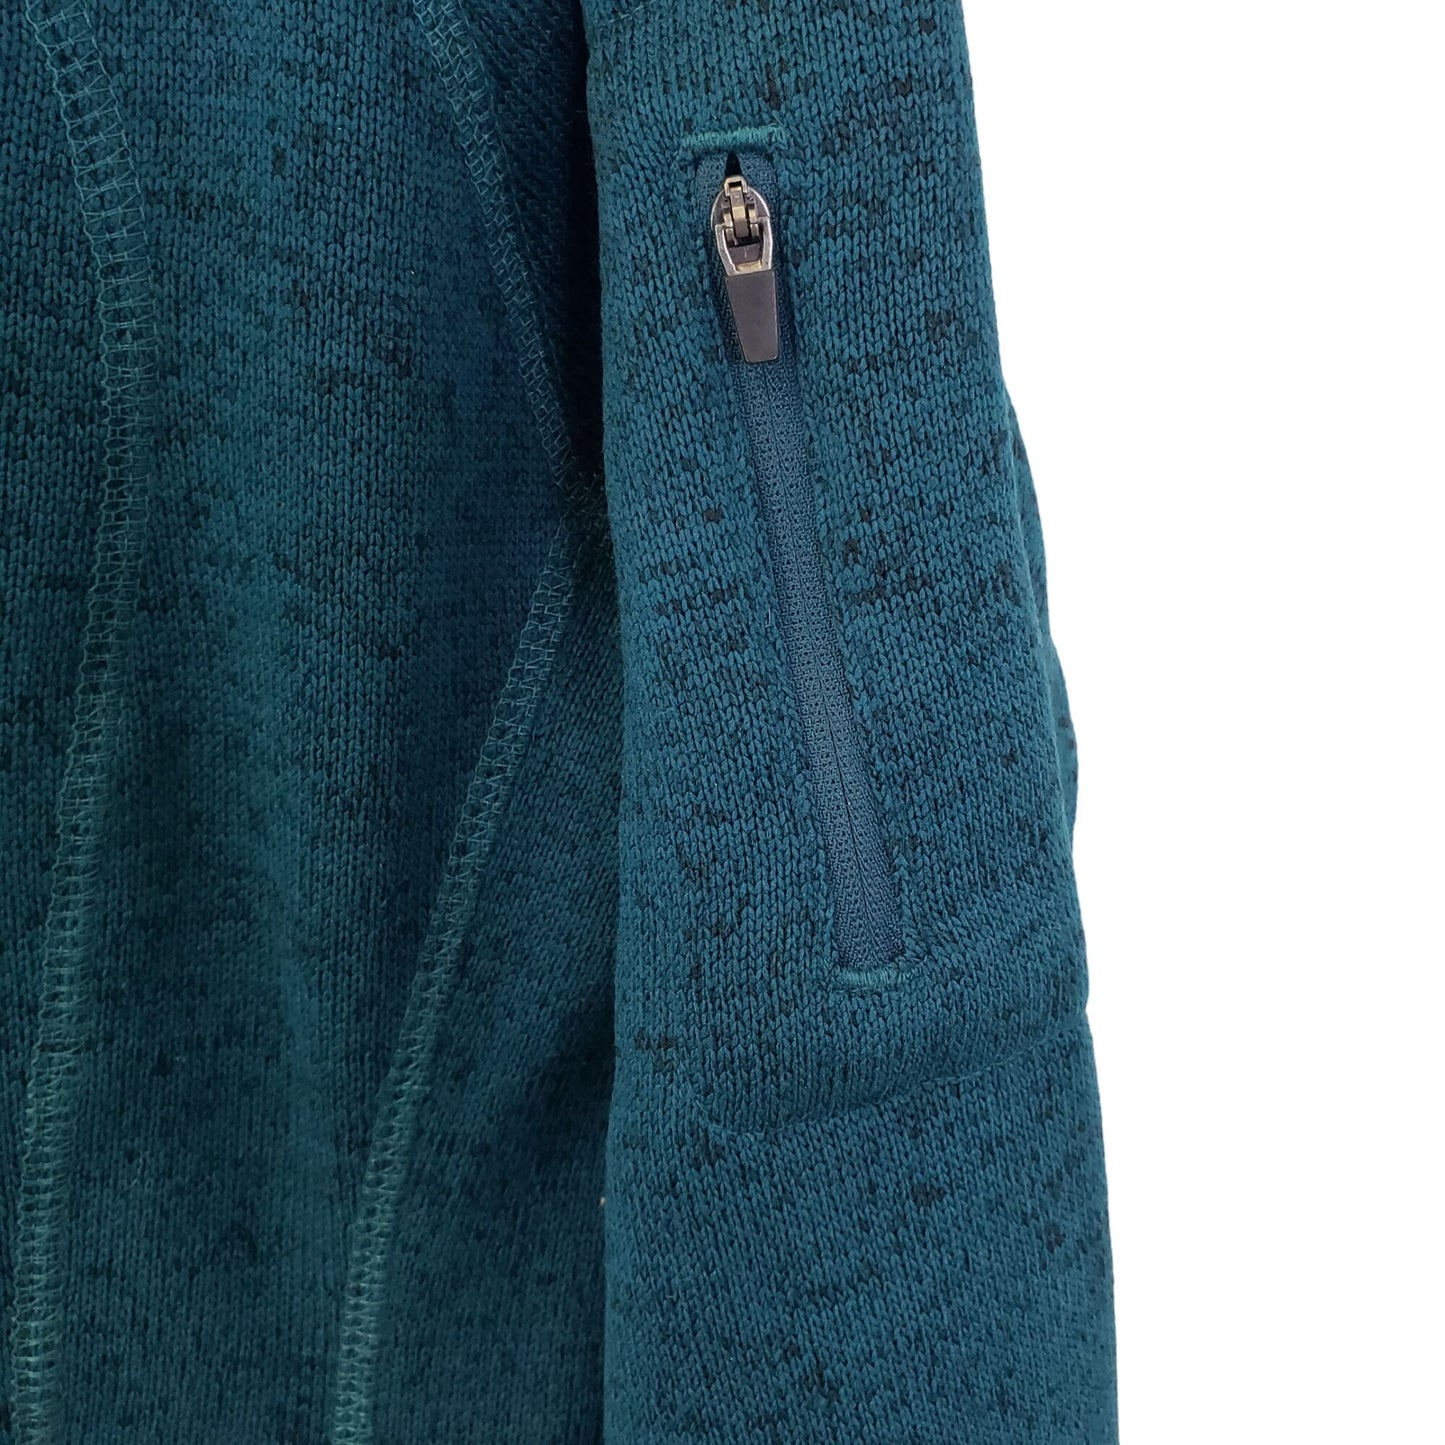 Eddie Bauer Quarter Zip Pullover Activewear Jacket Size Medium